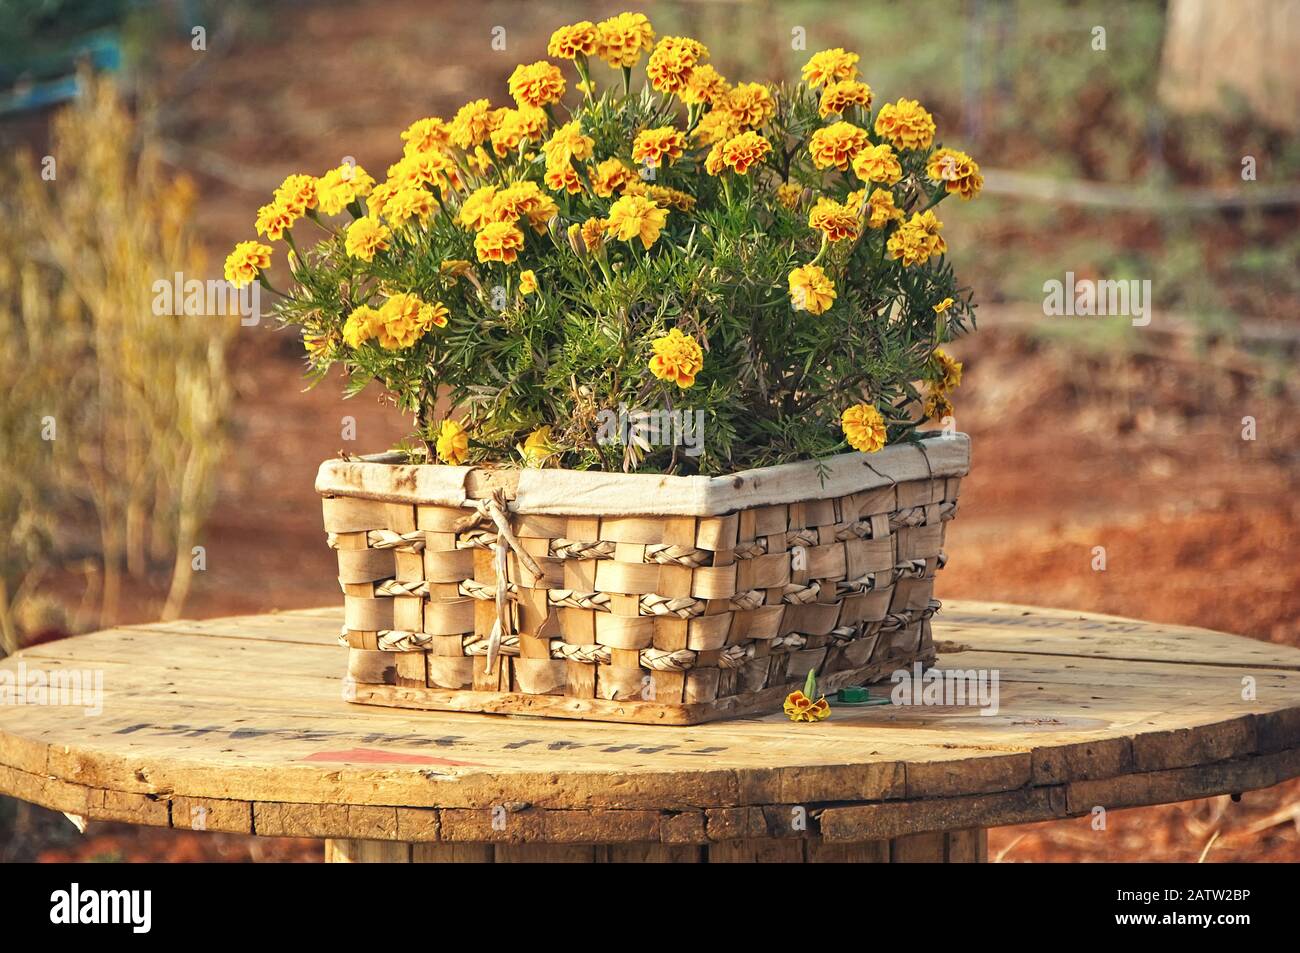 Fiore francese Marigold nel cesto, Tago Patula, arancio giallo mazzo di fiori, foglie verdi, piccolo arbusto, fuoco selettivo. Foto Stock